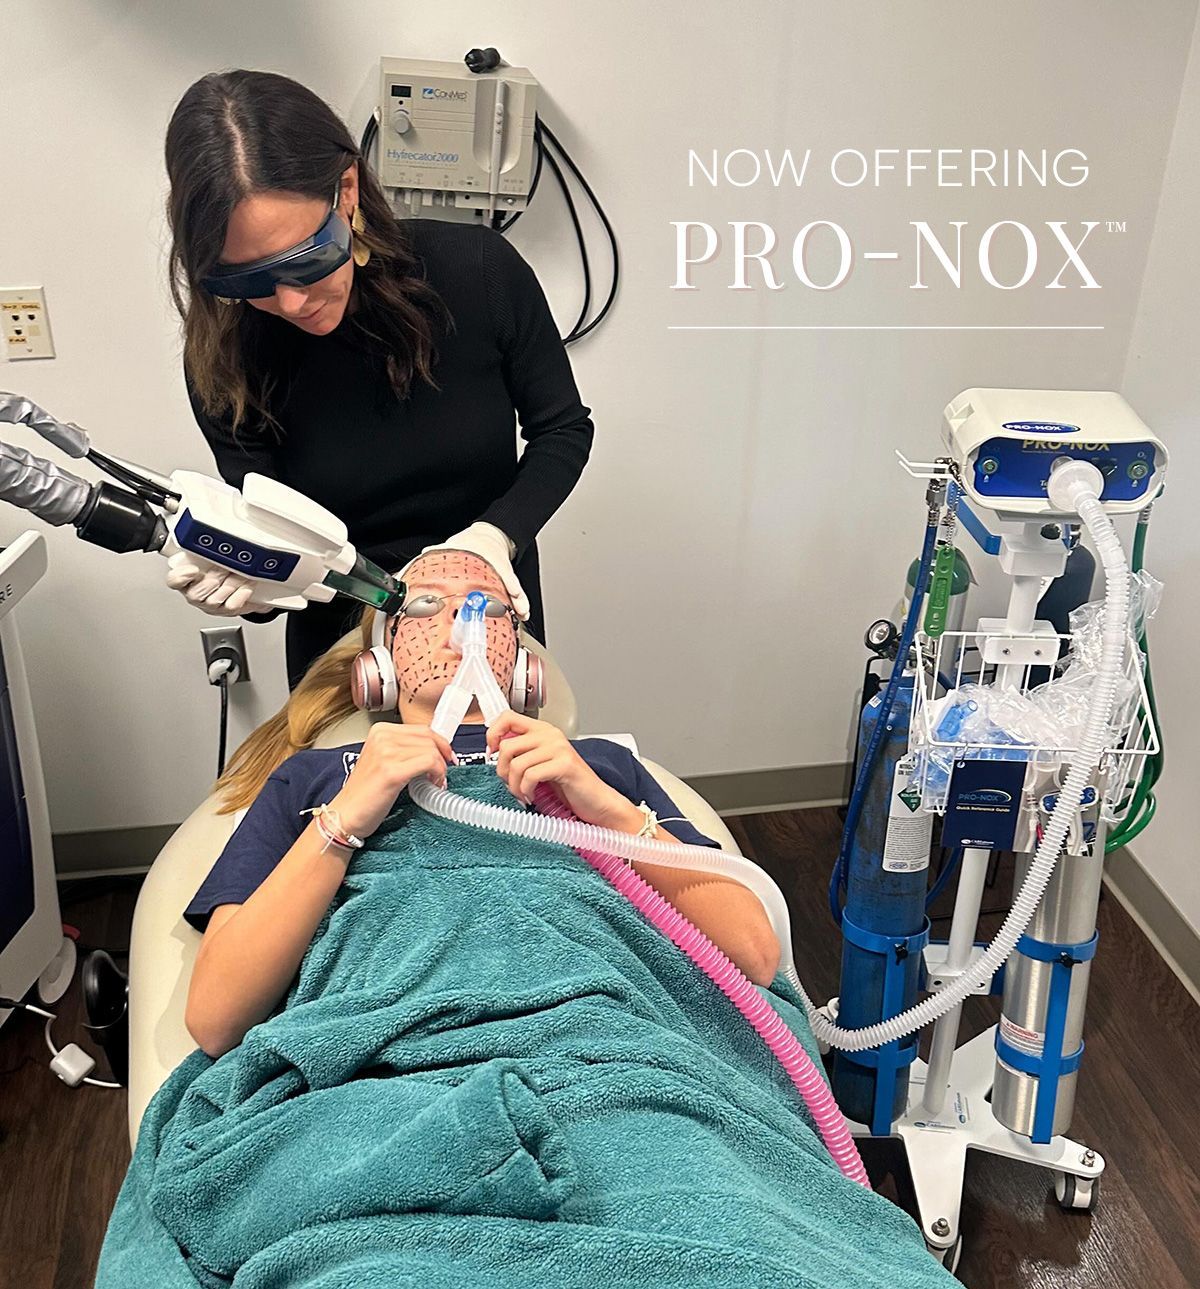 Dr. Jill Jahavery applies Accure laser treatment to patient while patient uses Pro-Nox nitrous oxide inhaler machine